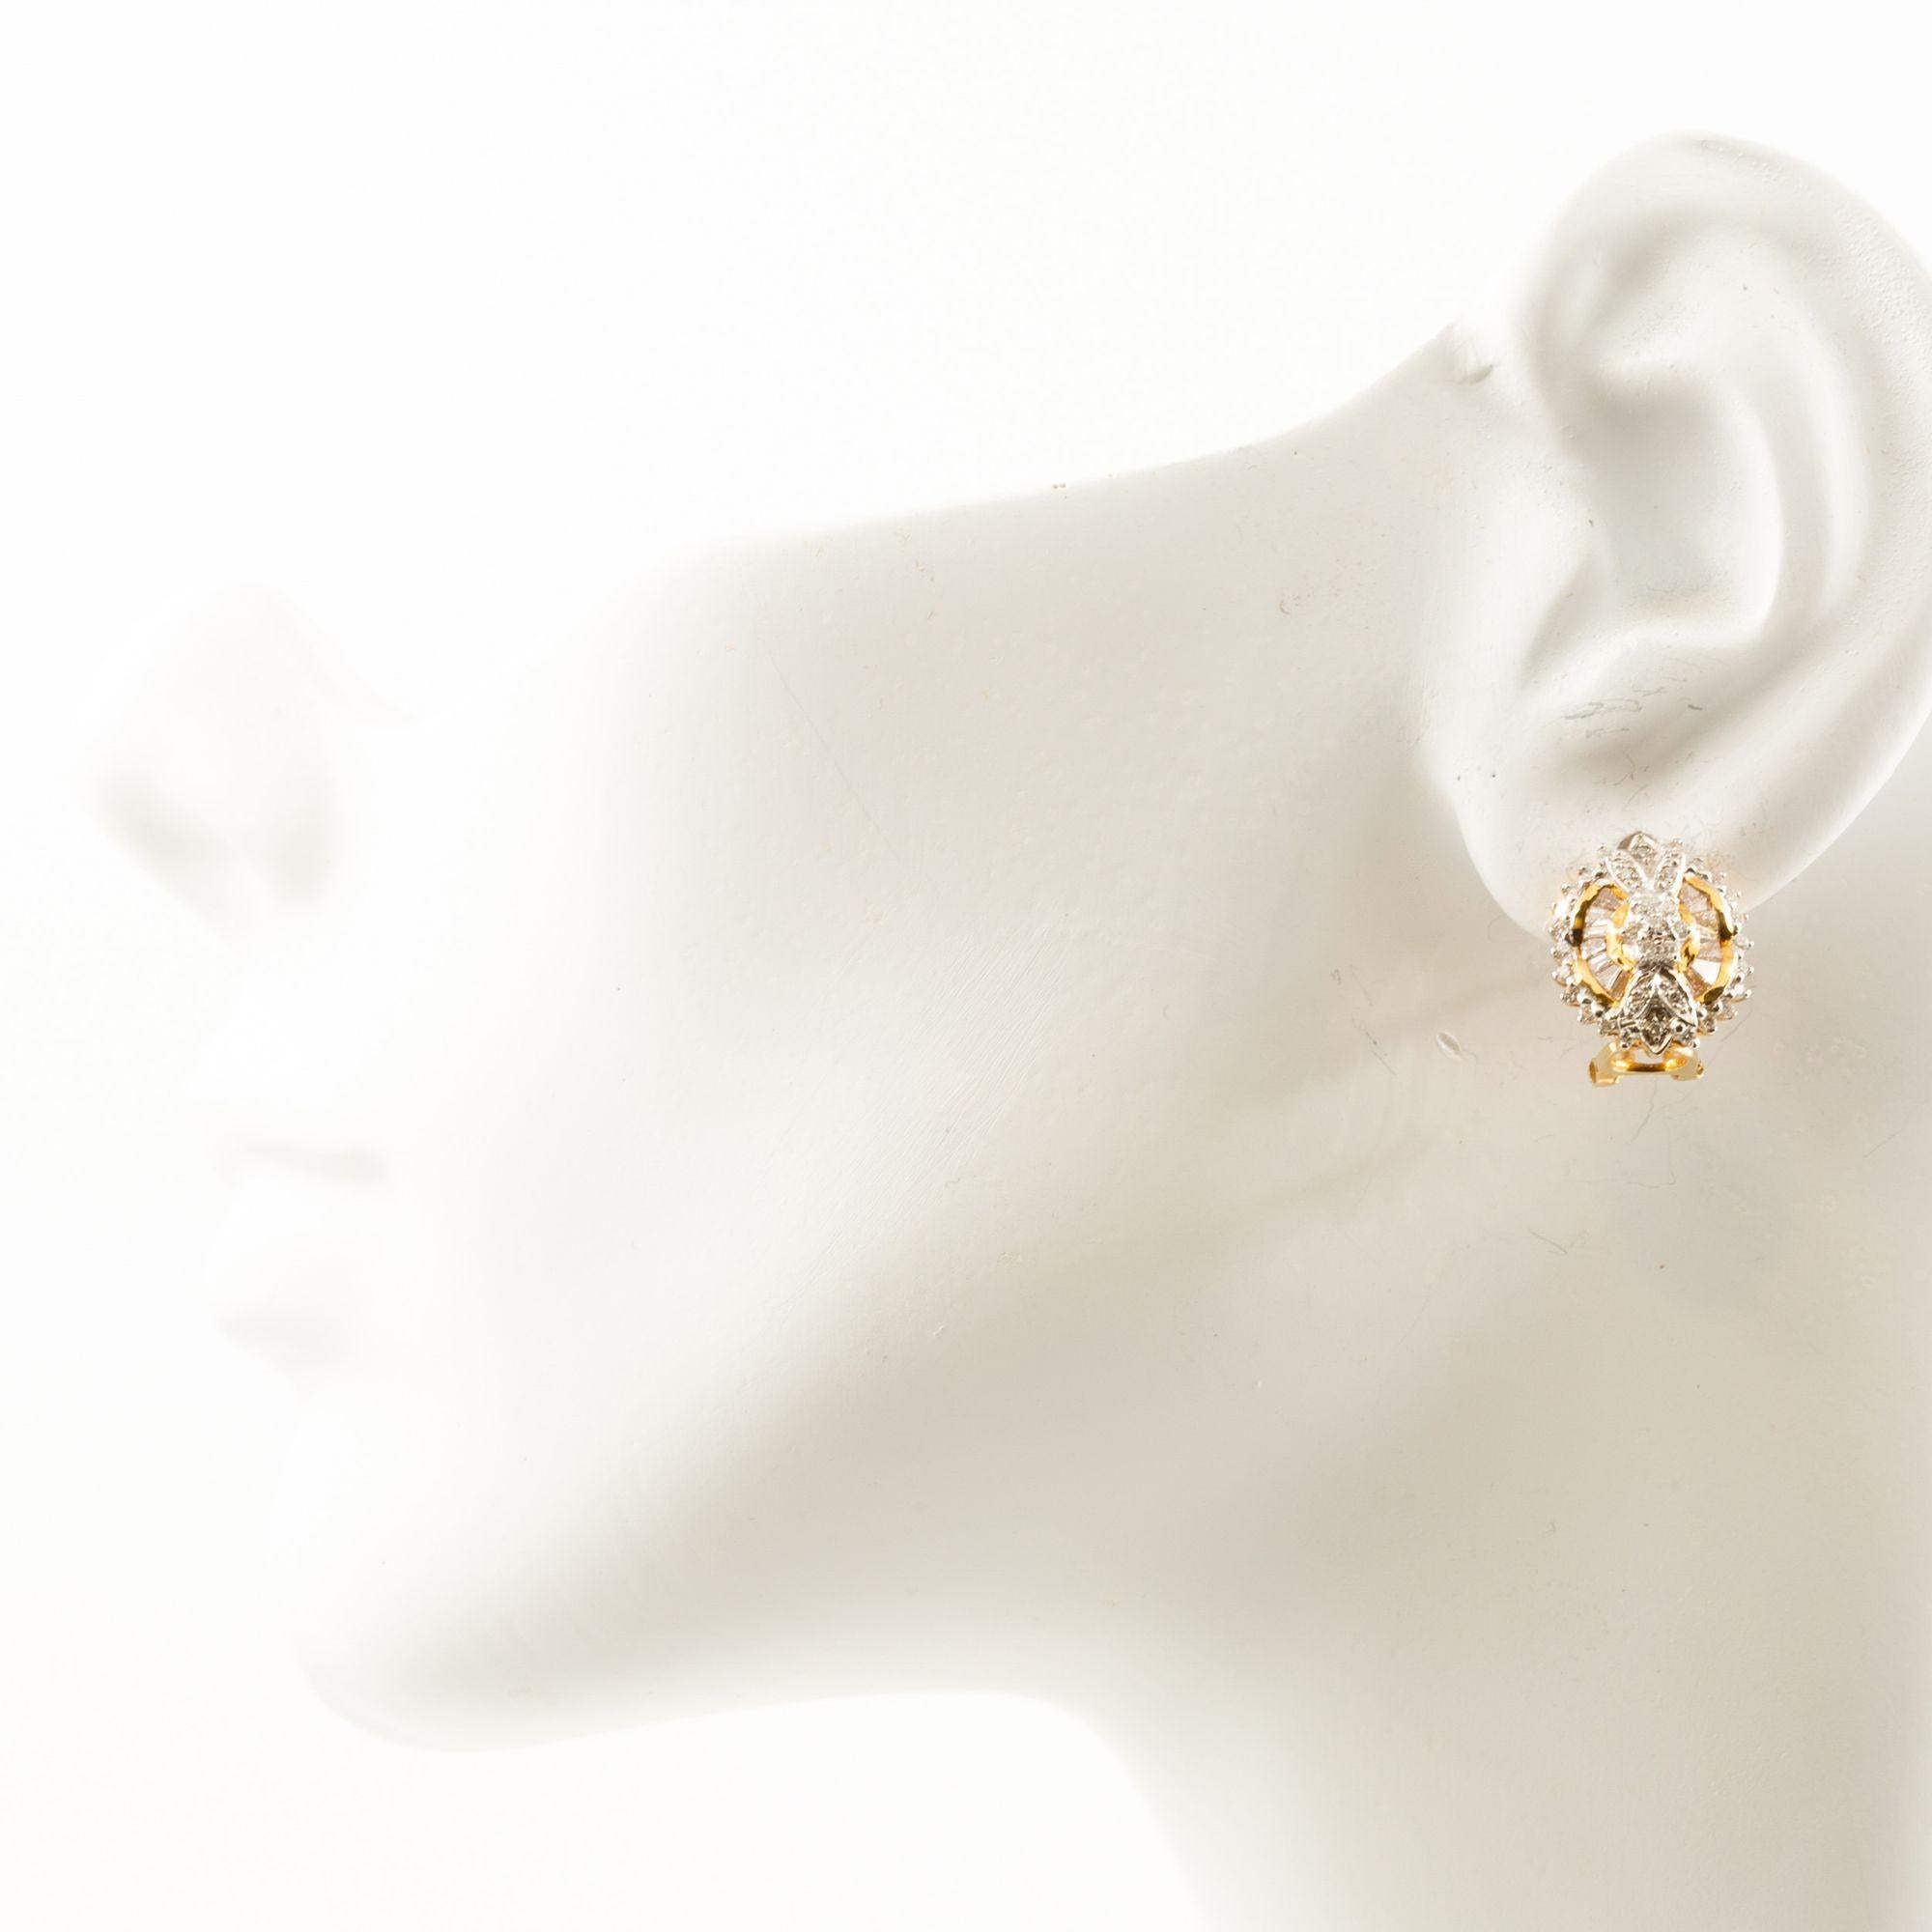 Paire de boucles d'oreilles en or jaune 14K et pierres précieuses
Article # C104612

Superbe paire de boucles d'oreilles en or jaune 14 carats, montées sur des clous d'oreilles et dotées d'un clip-back en oméga. Les boucles d'oreilles ont un design